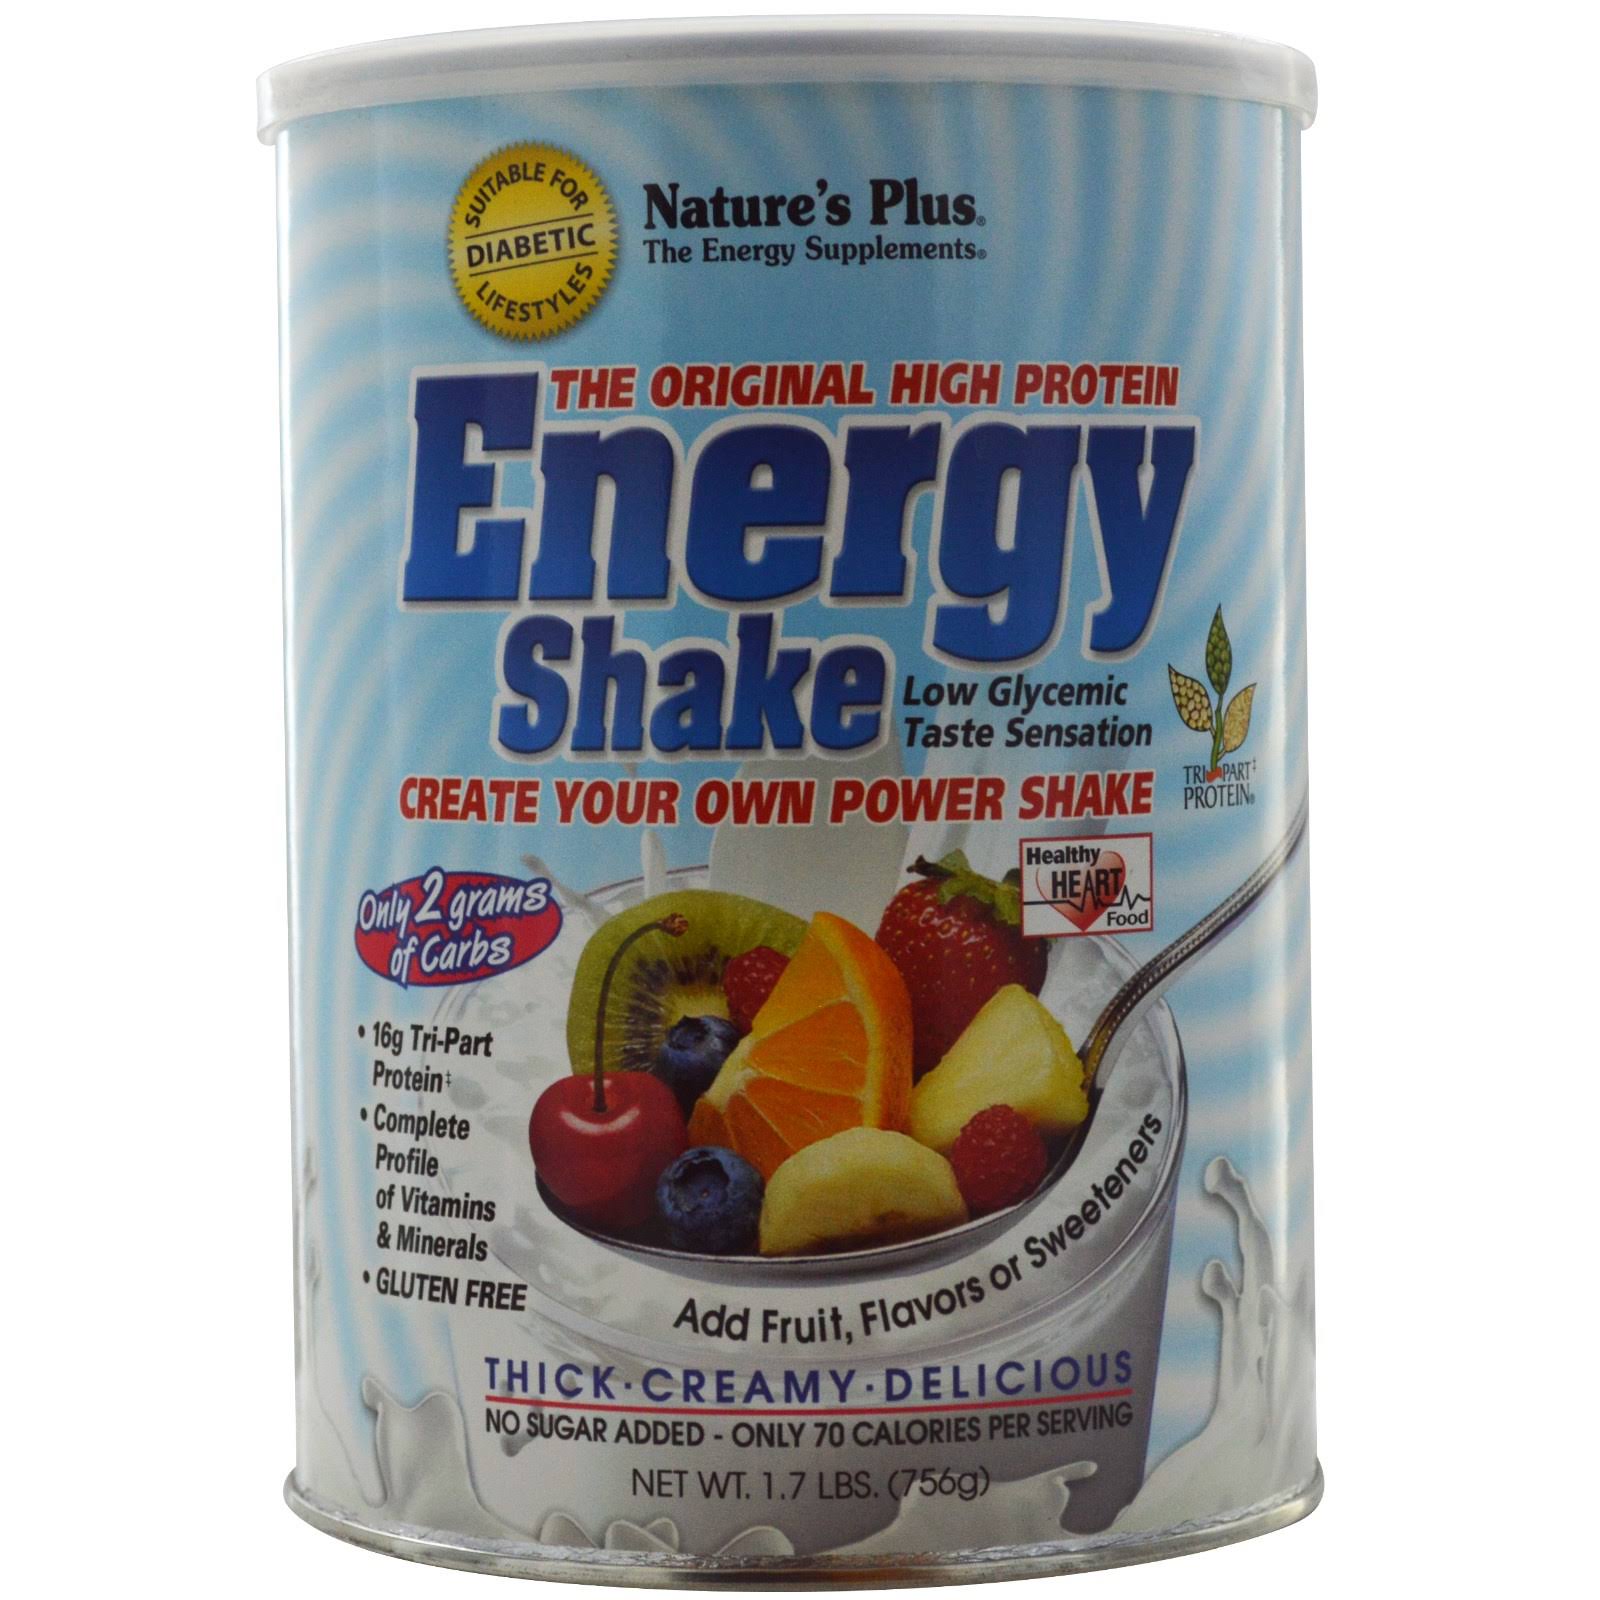 Nature's Plus Energy Shake - 1.7 lbs (756 g)